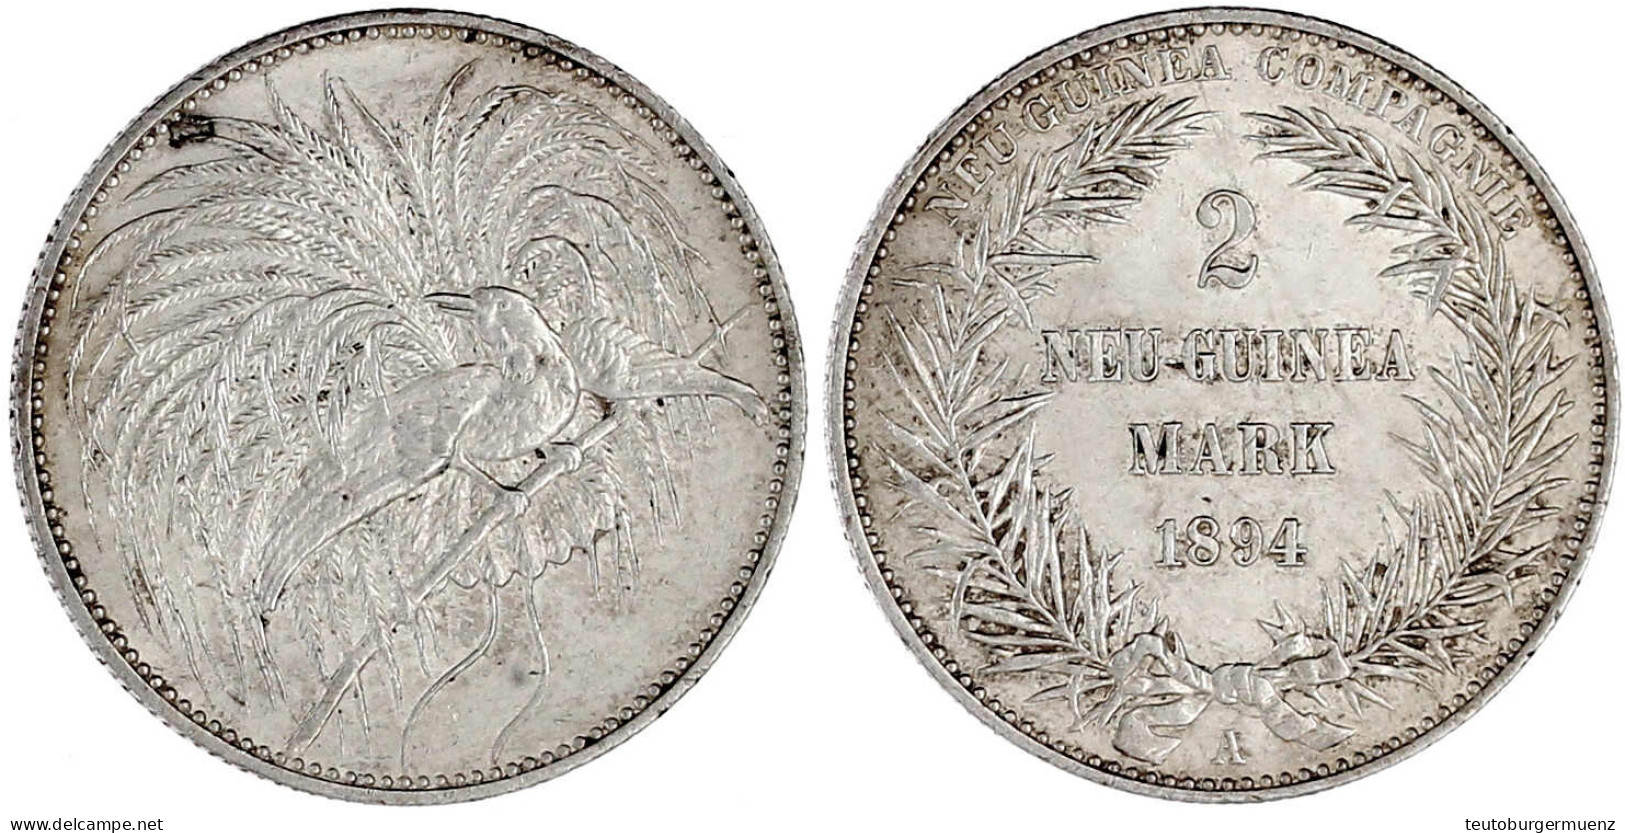 2 Neuguinea-Mark 1894 A, Paradiesvogel. Vorzüglich/Stempelglanz. Jaeger 706. - German New Guinea